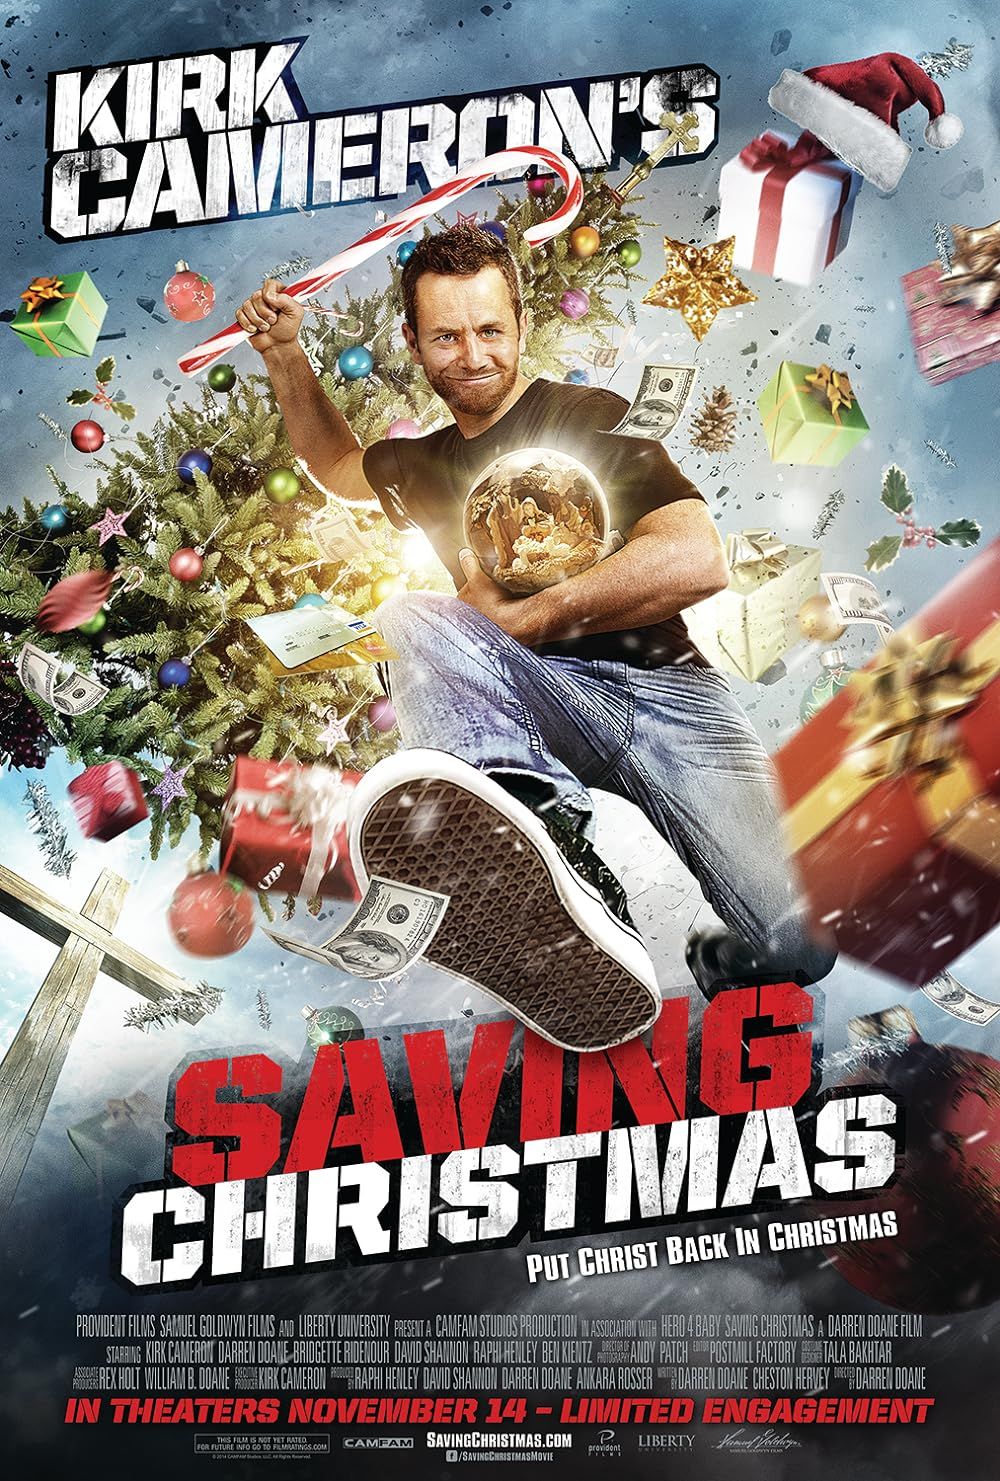 movie poster for Kirk Cameron's Saving Christmas 